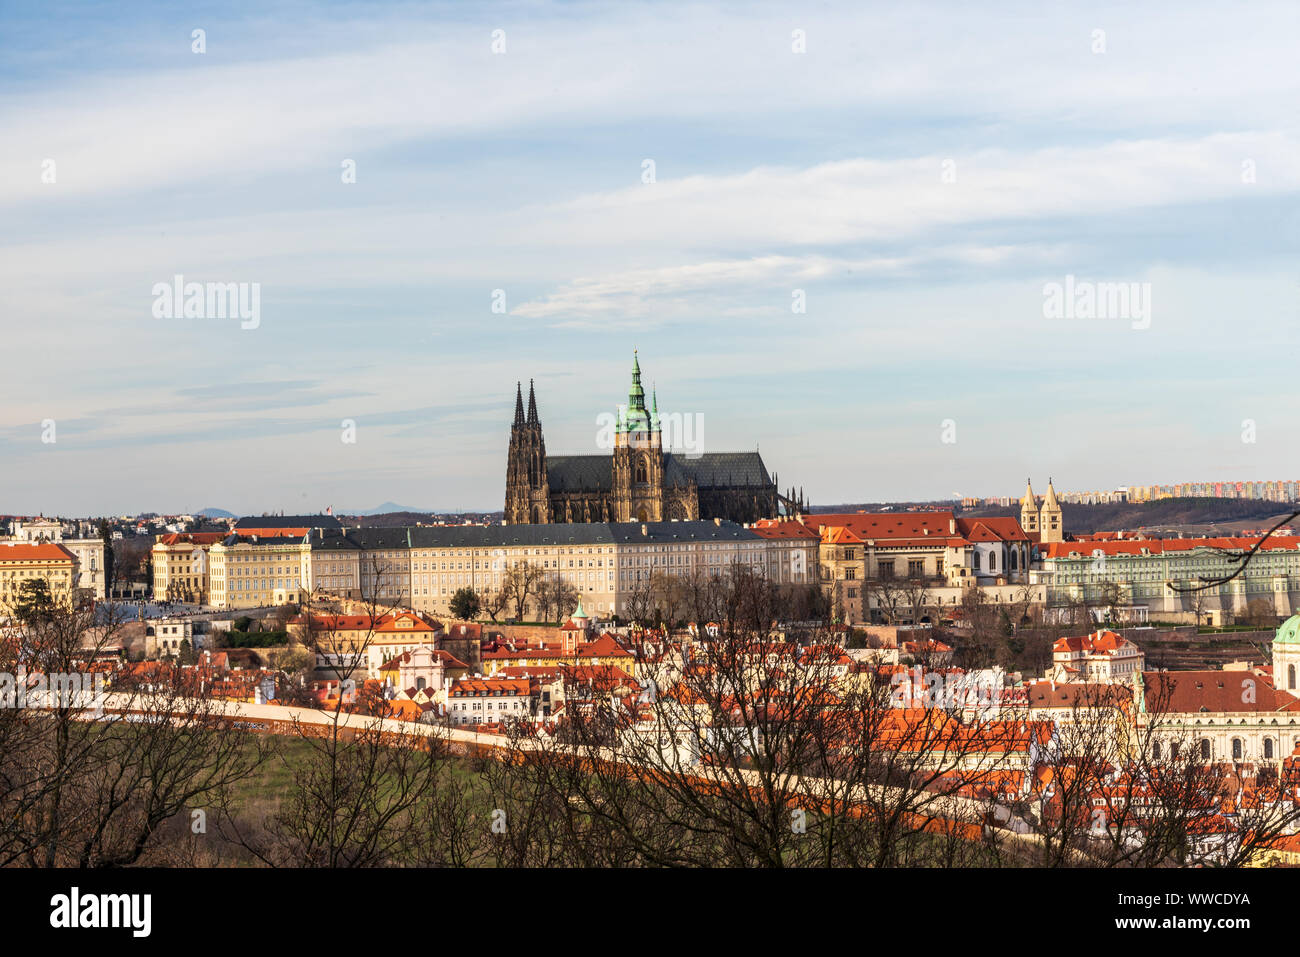 Vue de Prazsky hrad château de Petrinske sady parc public de la ville de Prague en République tchèque au cours de belle journée de printemps précoce Banque D'Images